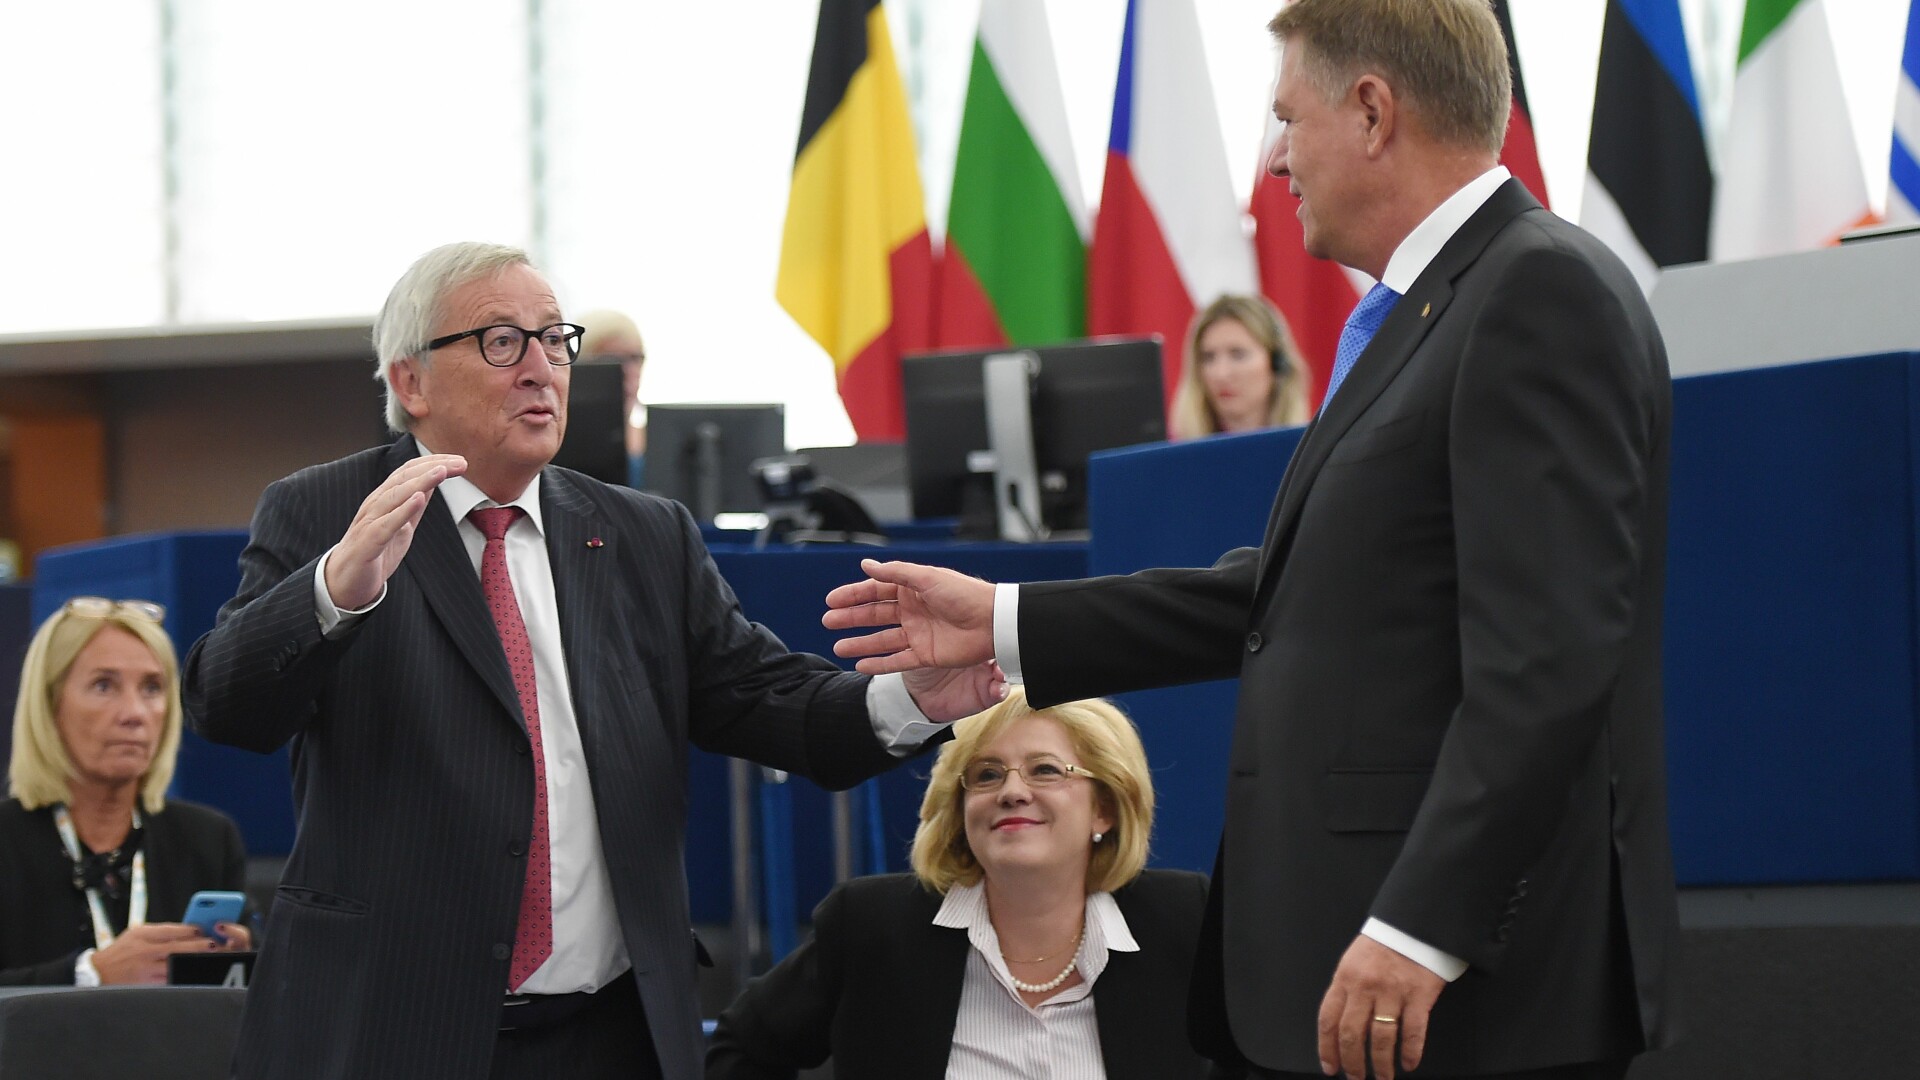 Klaus Iohannis, Jean-Claude Juncker